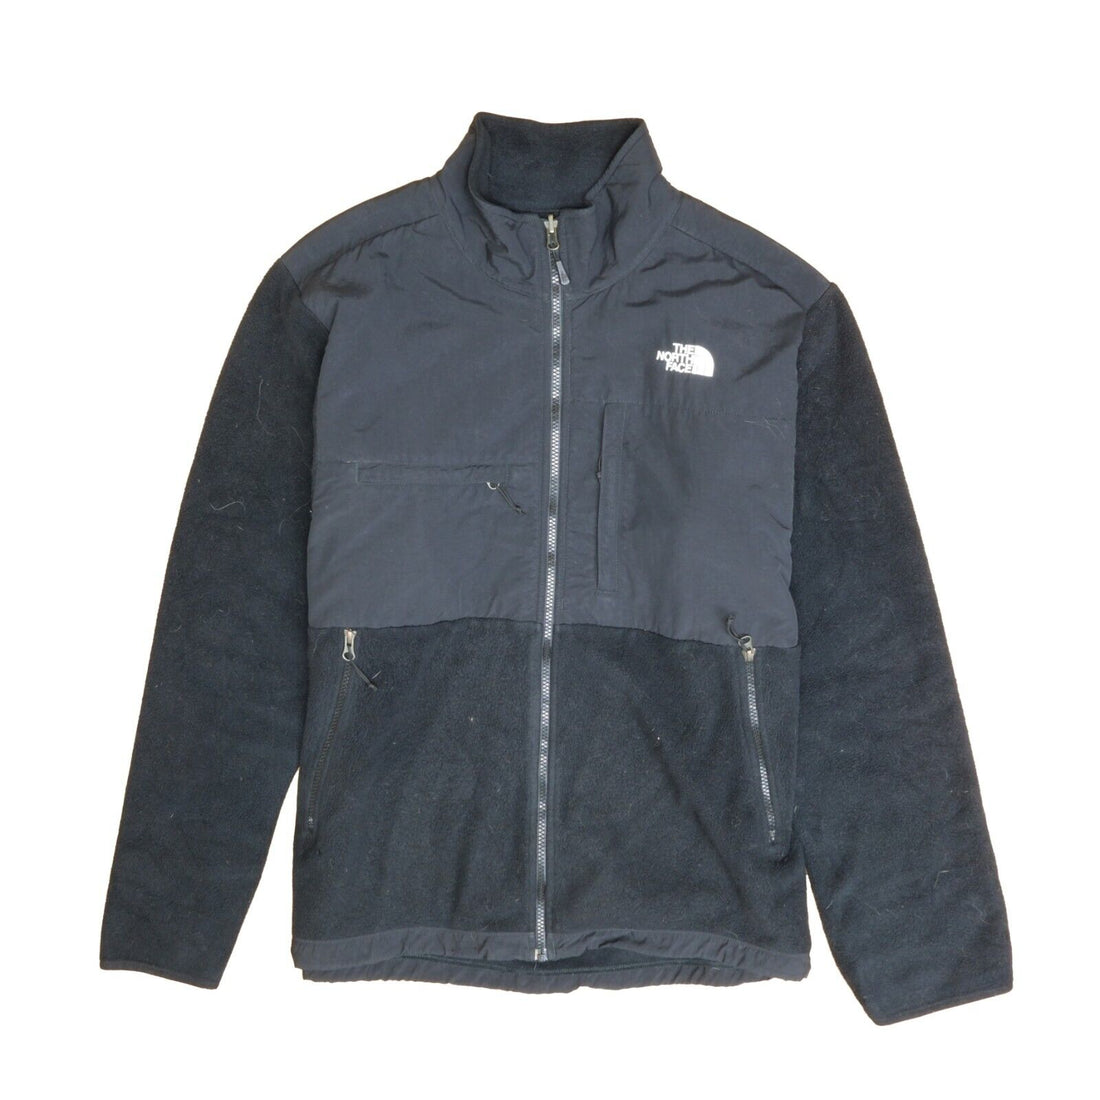 Vintage The North Face Denali Fleece Jacket Size Large Black